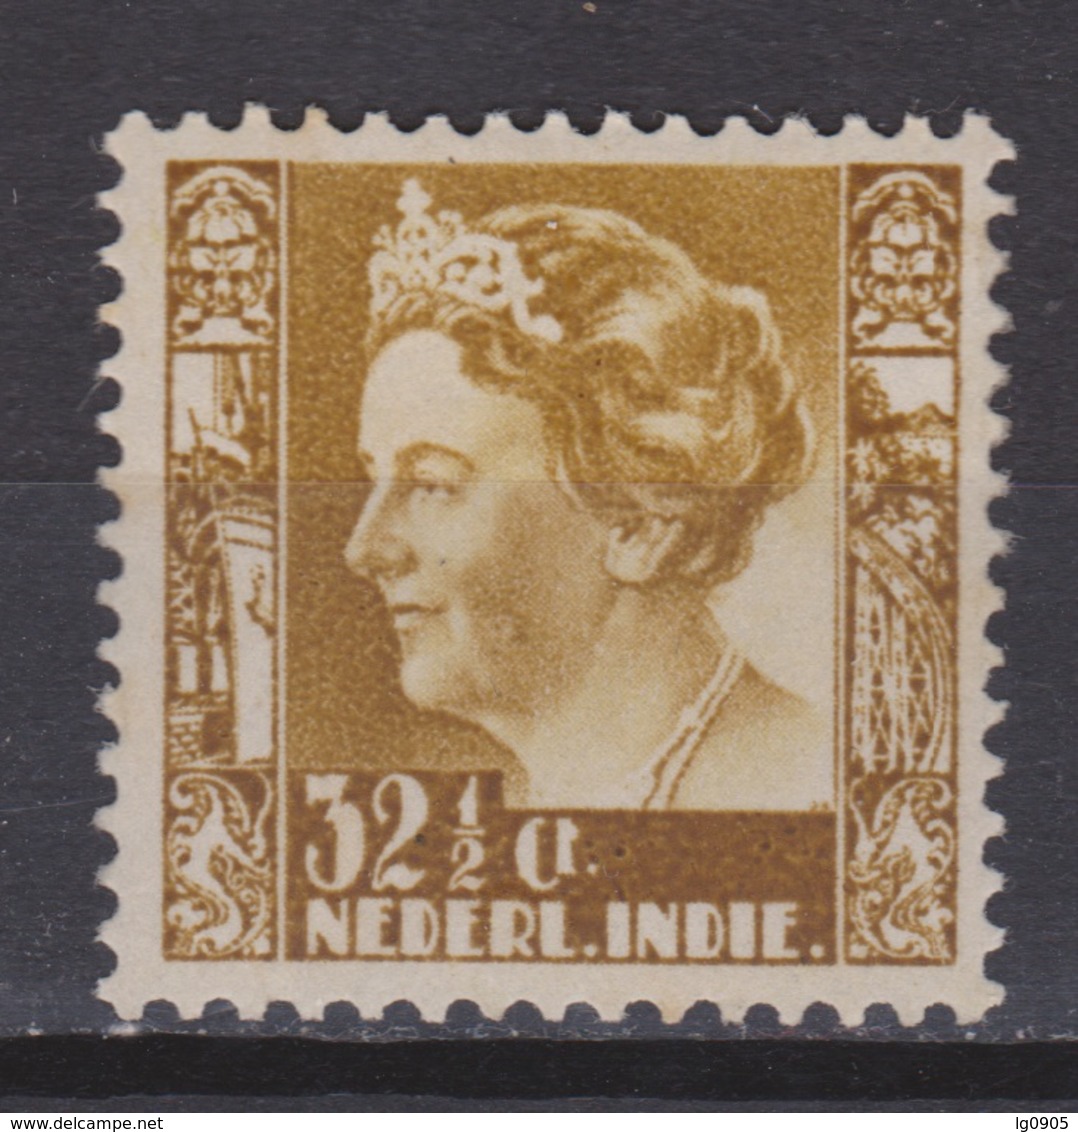 Nederlands Indie Netherlands Indies Dutch Indies 201 MLH ; Koningin, Queen, Reine, Reina Wilhelmina 1934-1937 - Niederländisch-Indien